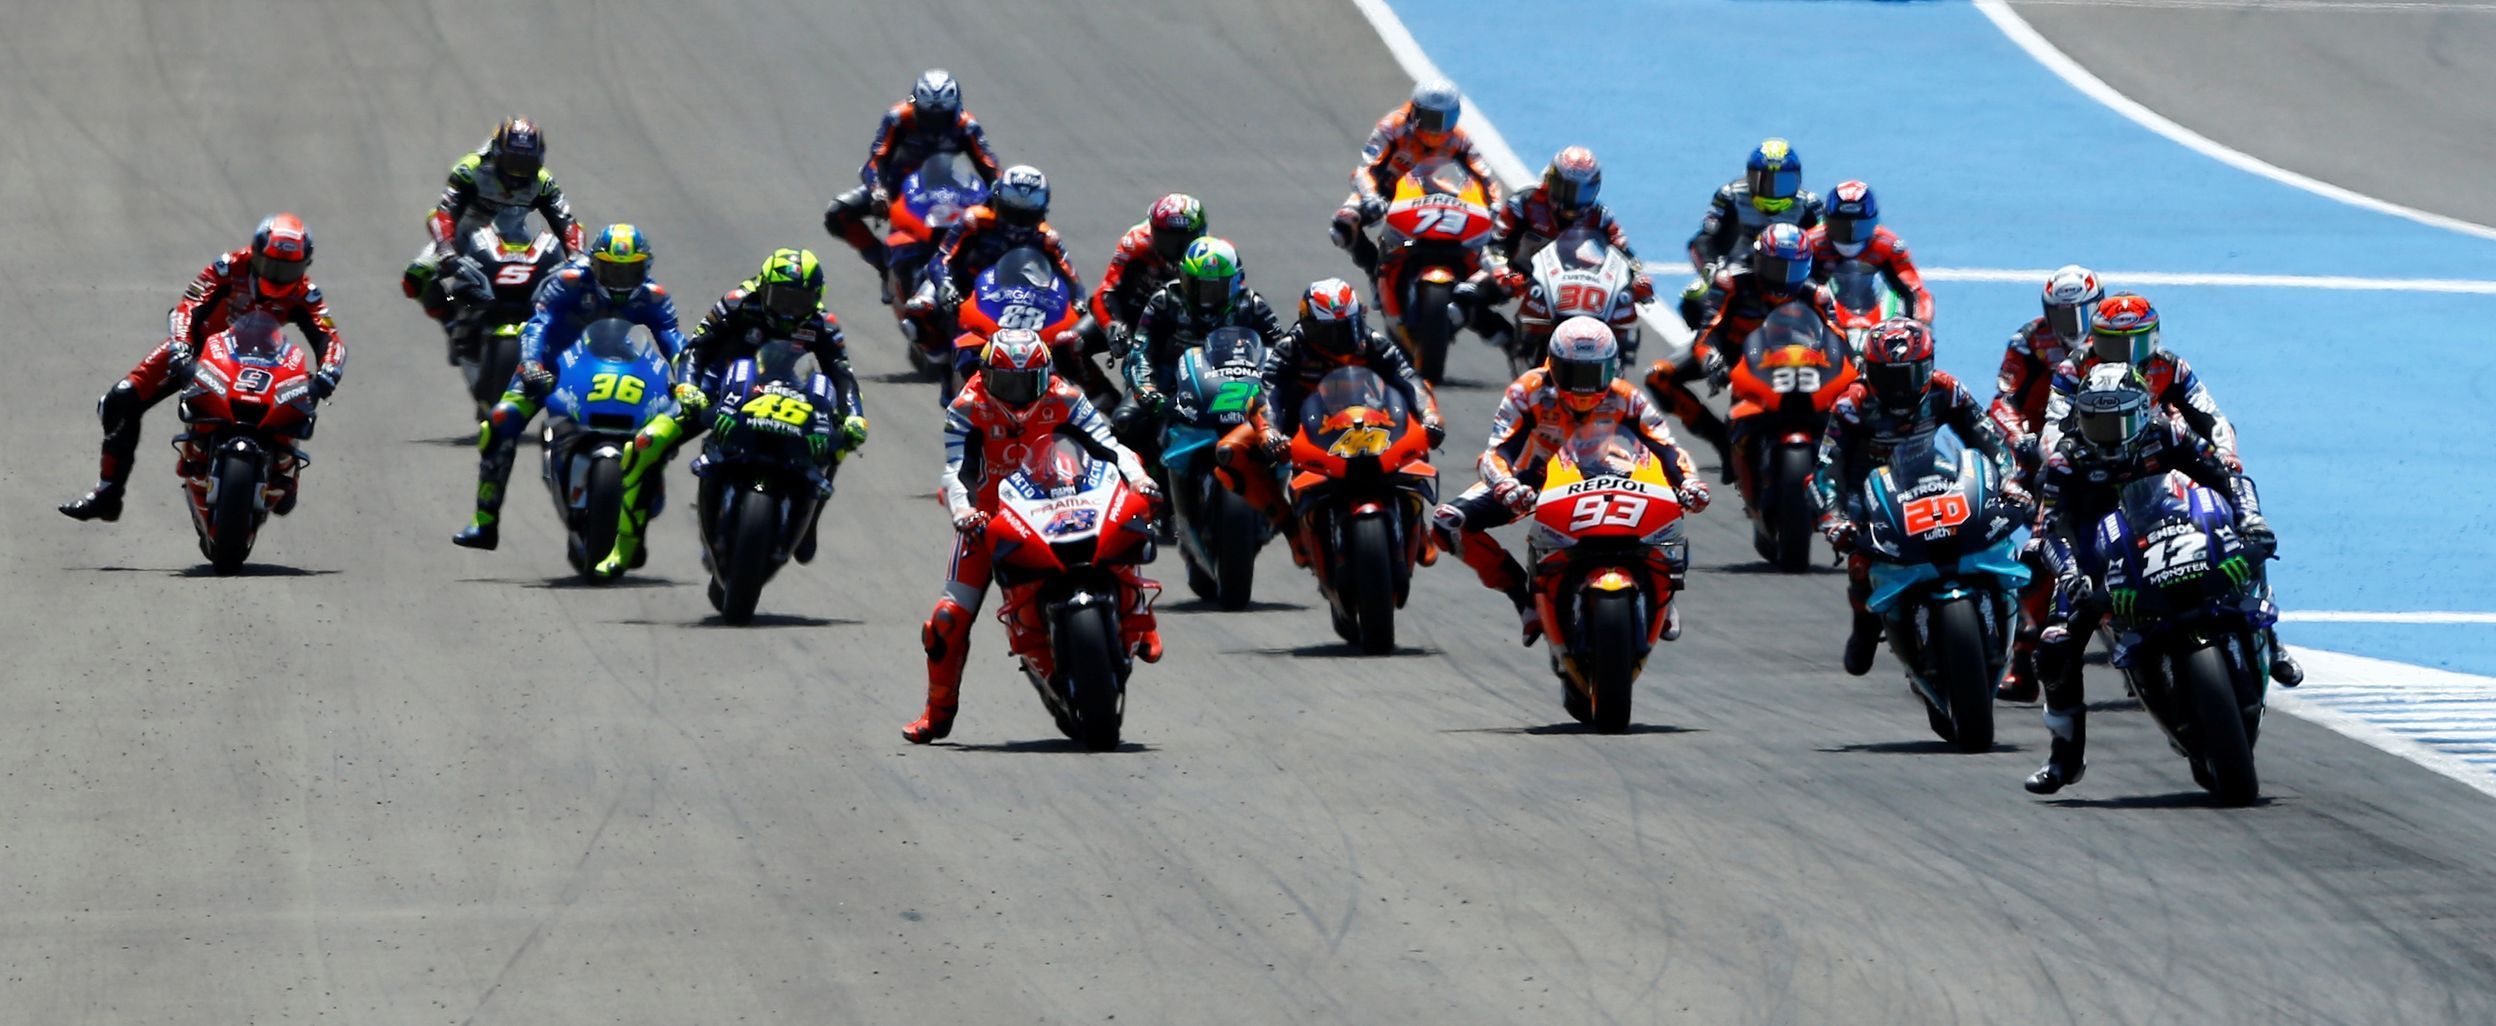 Start závodu MotoGP v rámci GP Španělska 2020